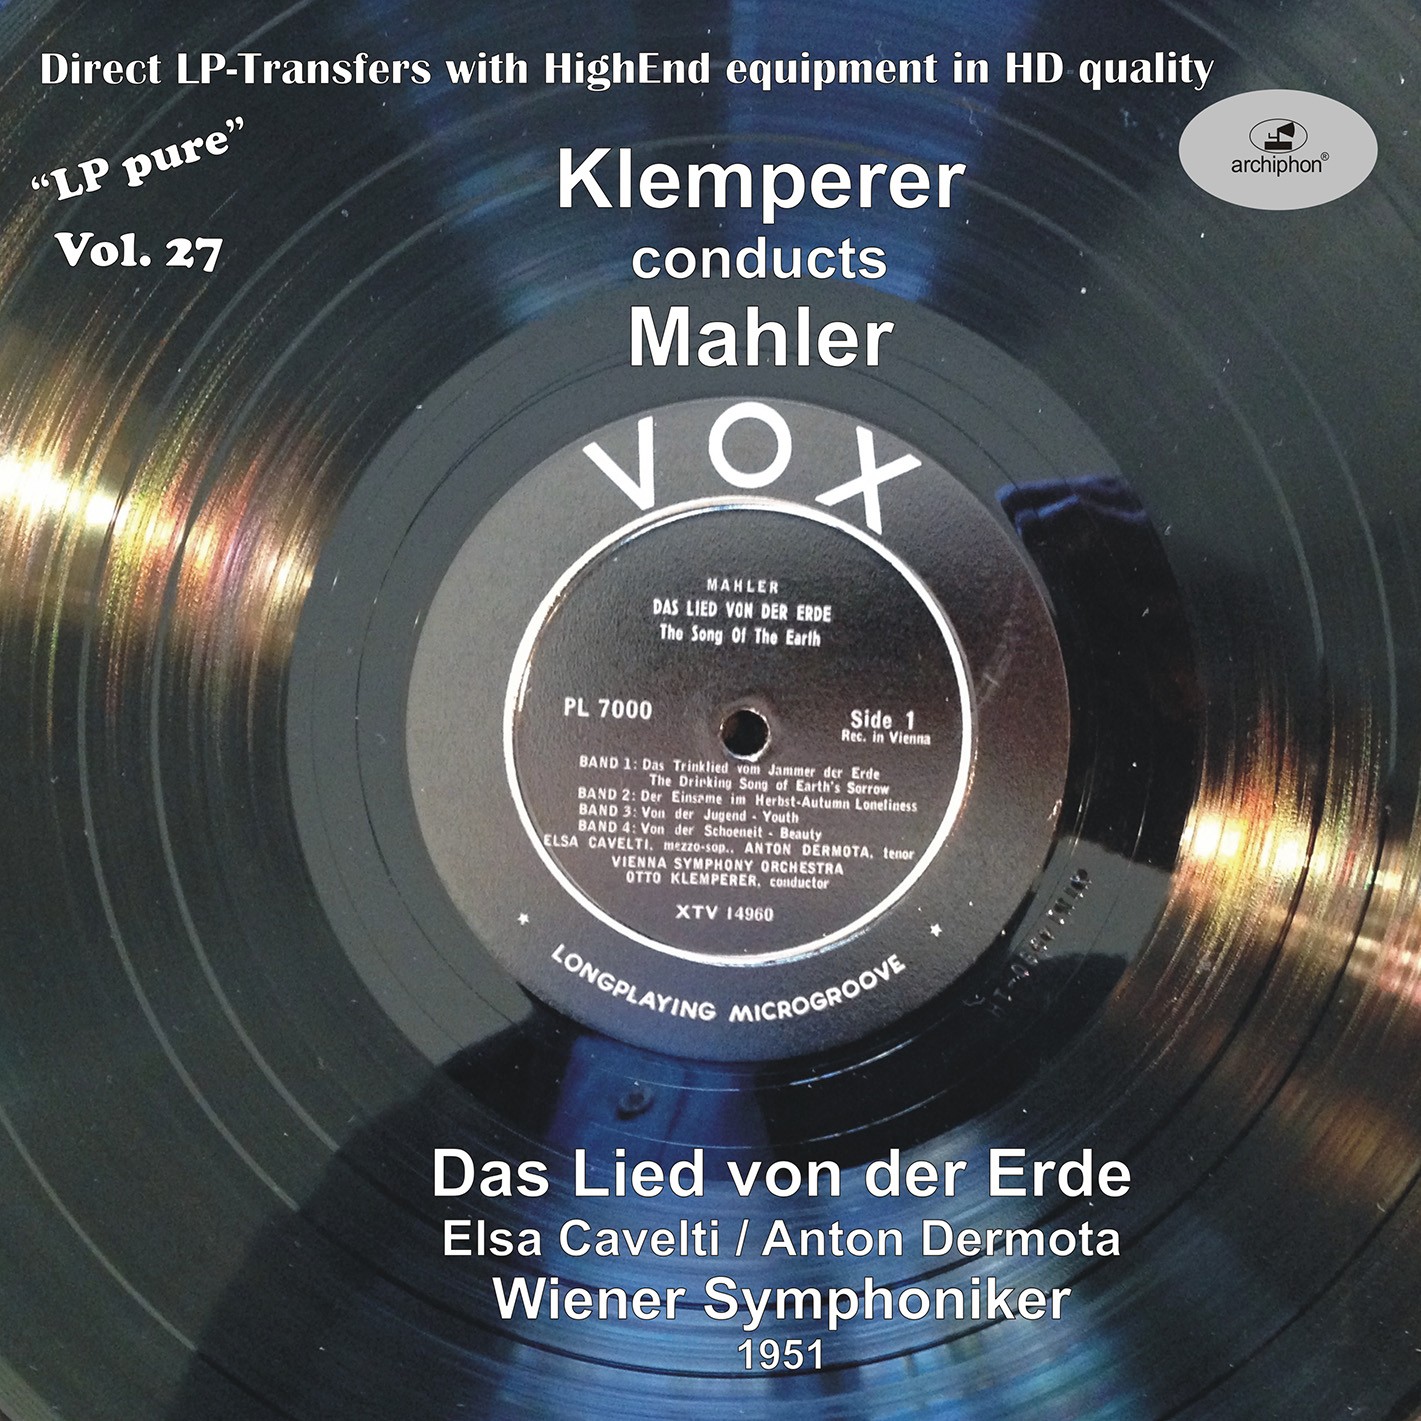 Anton Dermota, Elsa Cavelti, Wiener Symphoniker, Otto Klemperer - LP Pure, Vol. 27: Klemperer Conducts Mahler (1951/2016) [FLAC 24bit/96kHz]